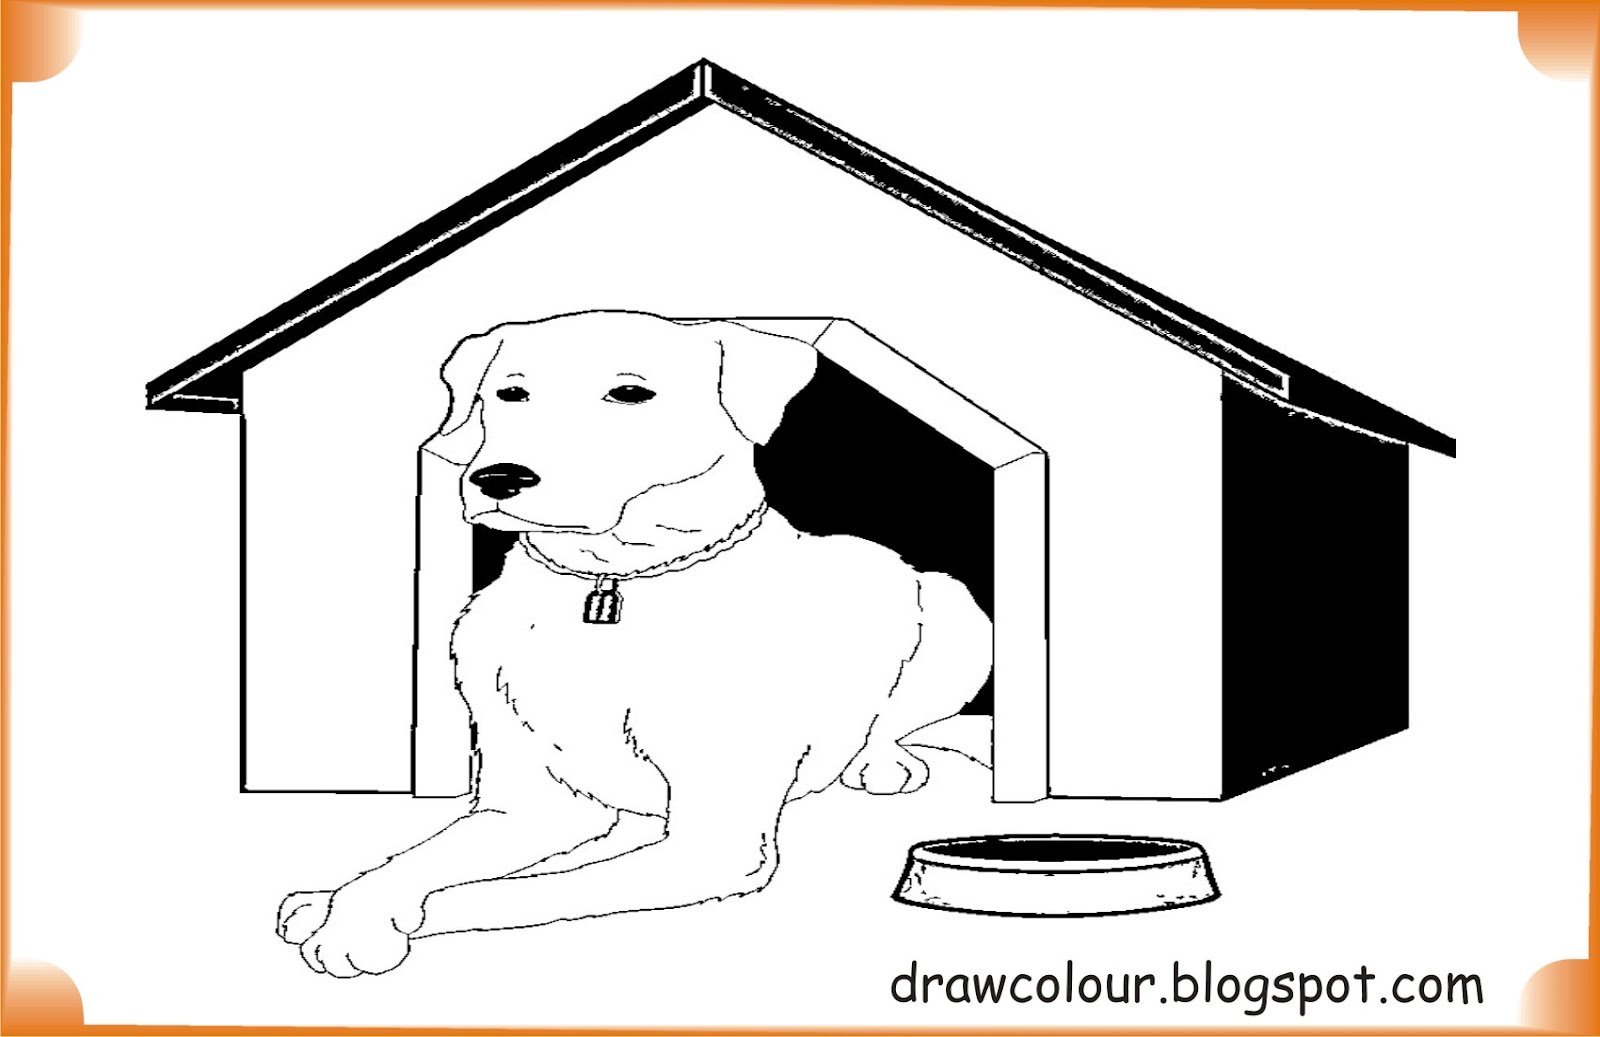 Игра dog house dogs house net. Жилище собаки картинки для детей. Dogs House Coloring. Dog in the House Clipart черно-белая. Рисунок на конкурс хвостик дог Хаус для детей.